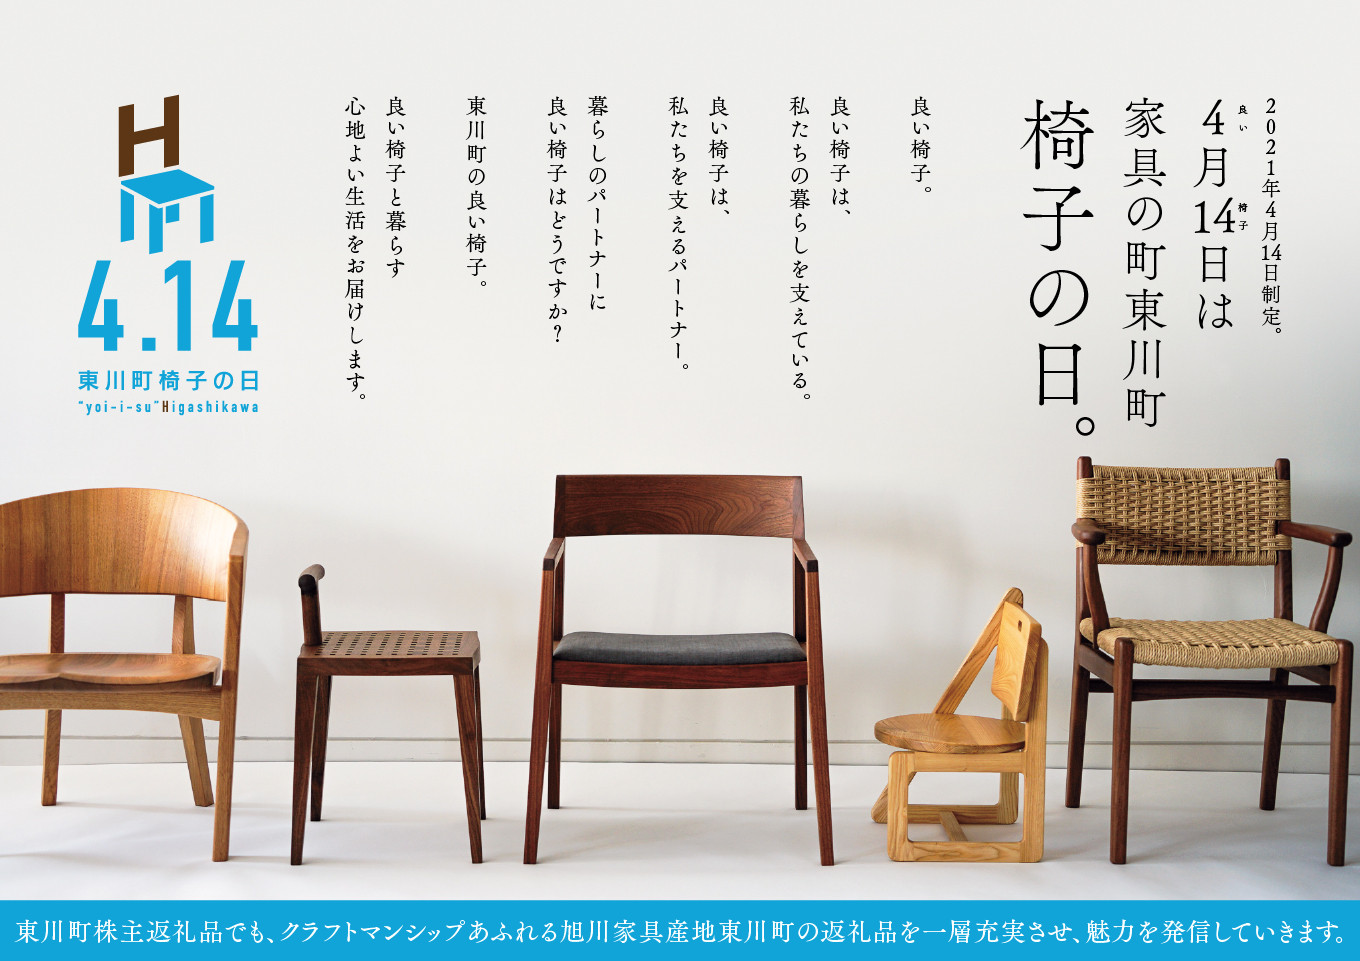 ふるさと納税 (21014002)ハンの木の家具 仏壇 北海道東川町